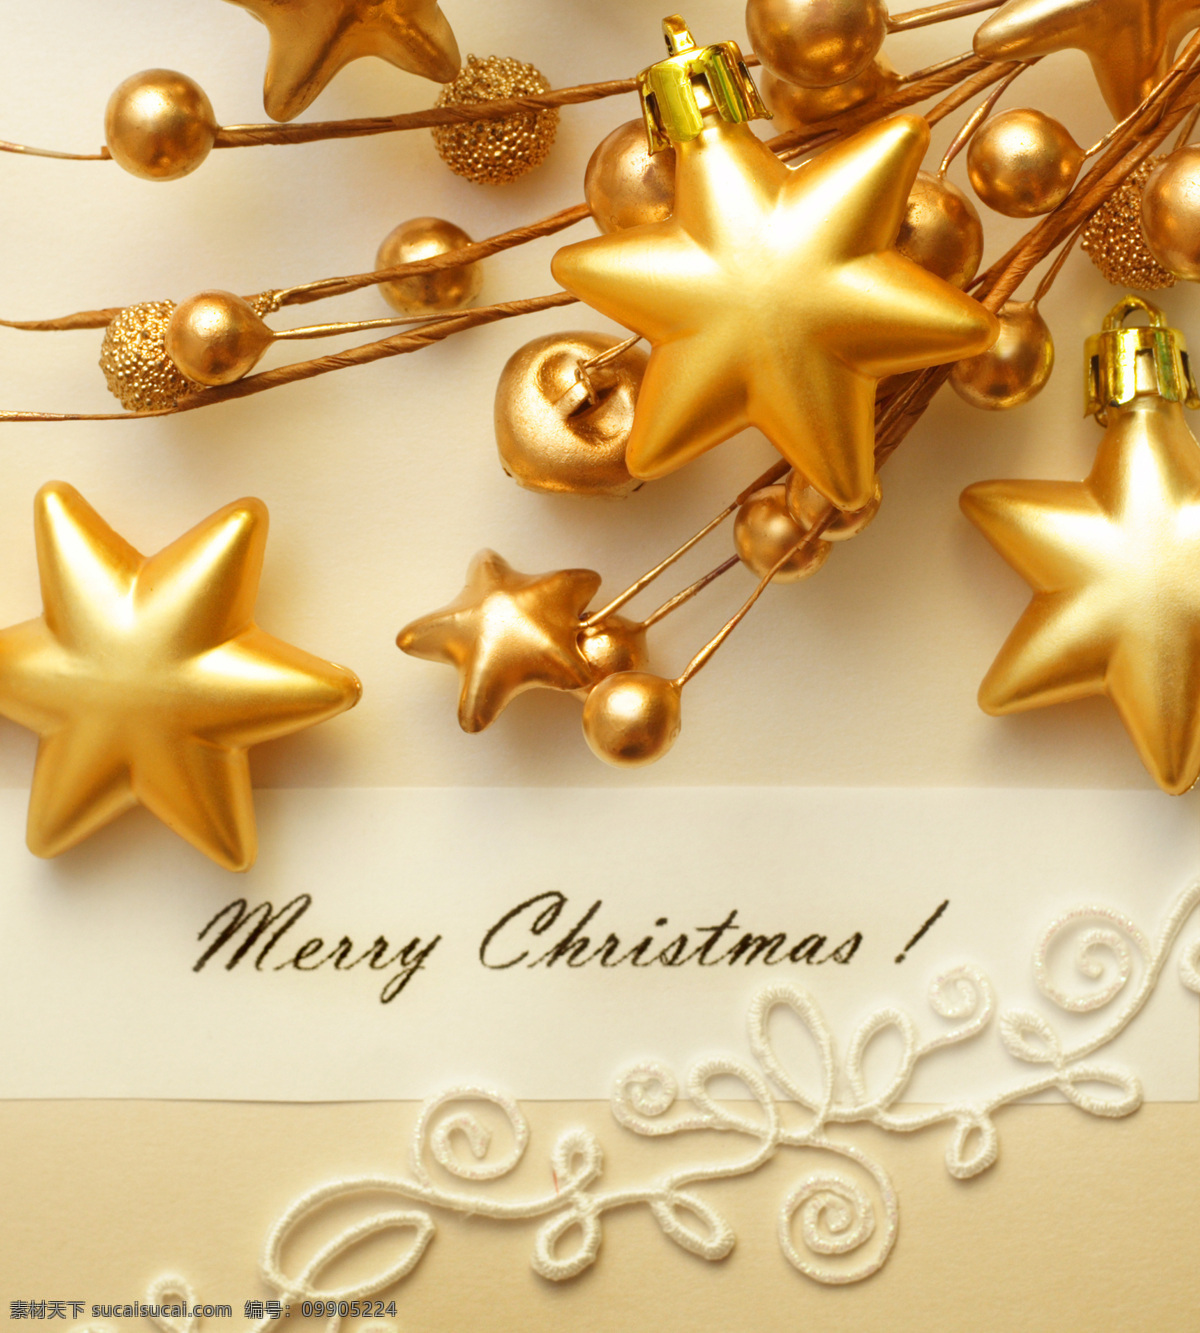 金色 圣诞球 五角星 圣诞节 圣诞装饰物 圣诞节元素 节日庆典 生活百科